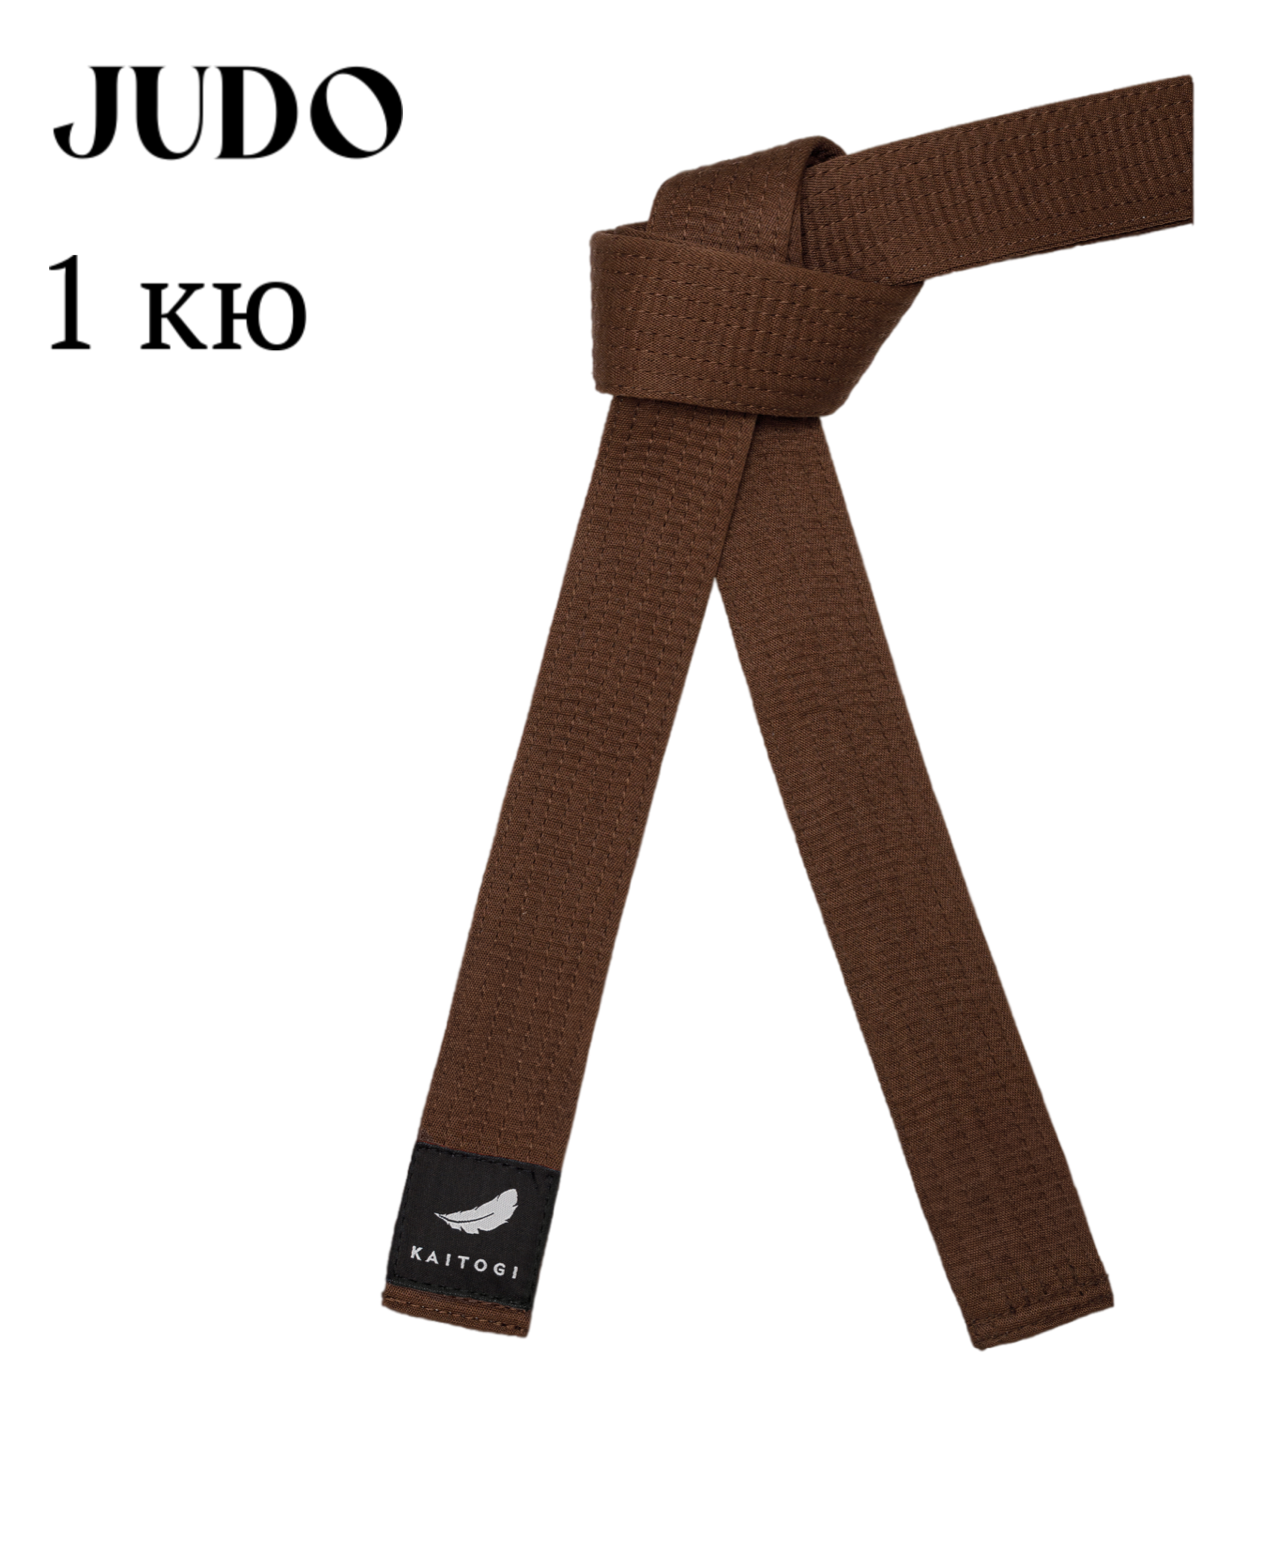 Пояс KAITOGI для дзюдо 1 кю коричневый 310 см